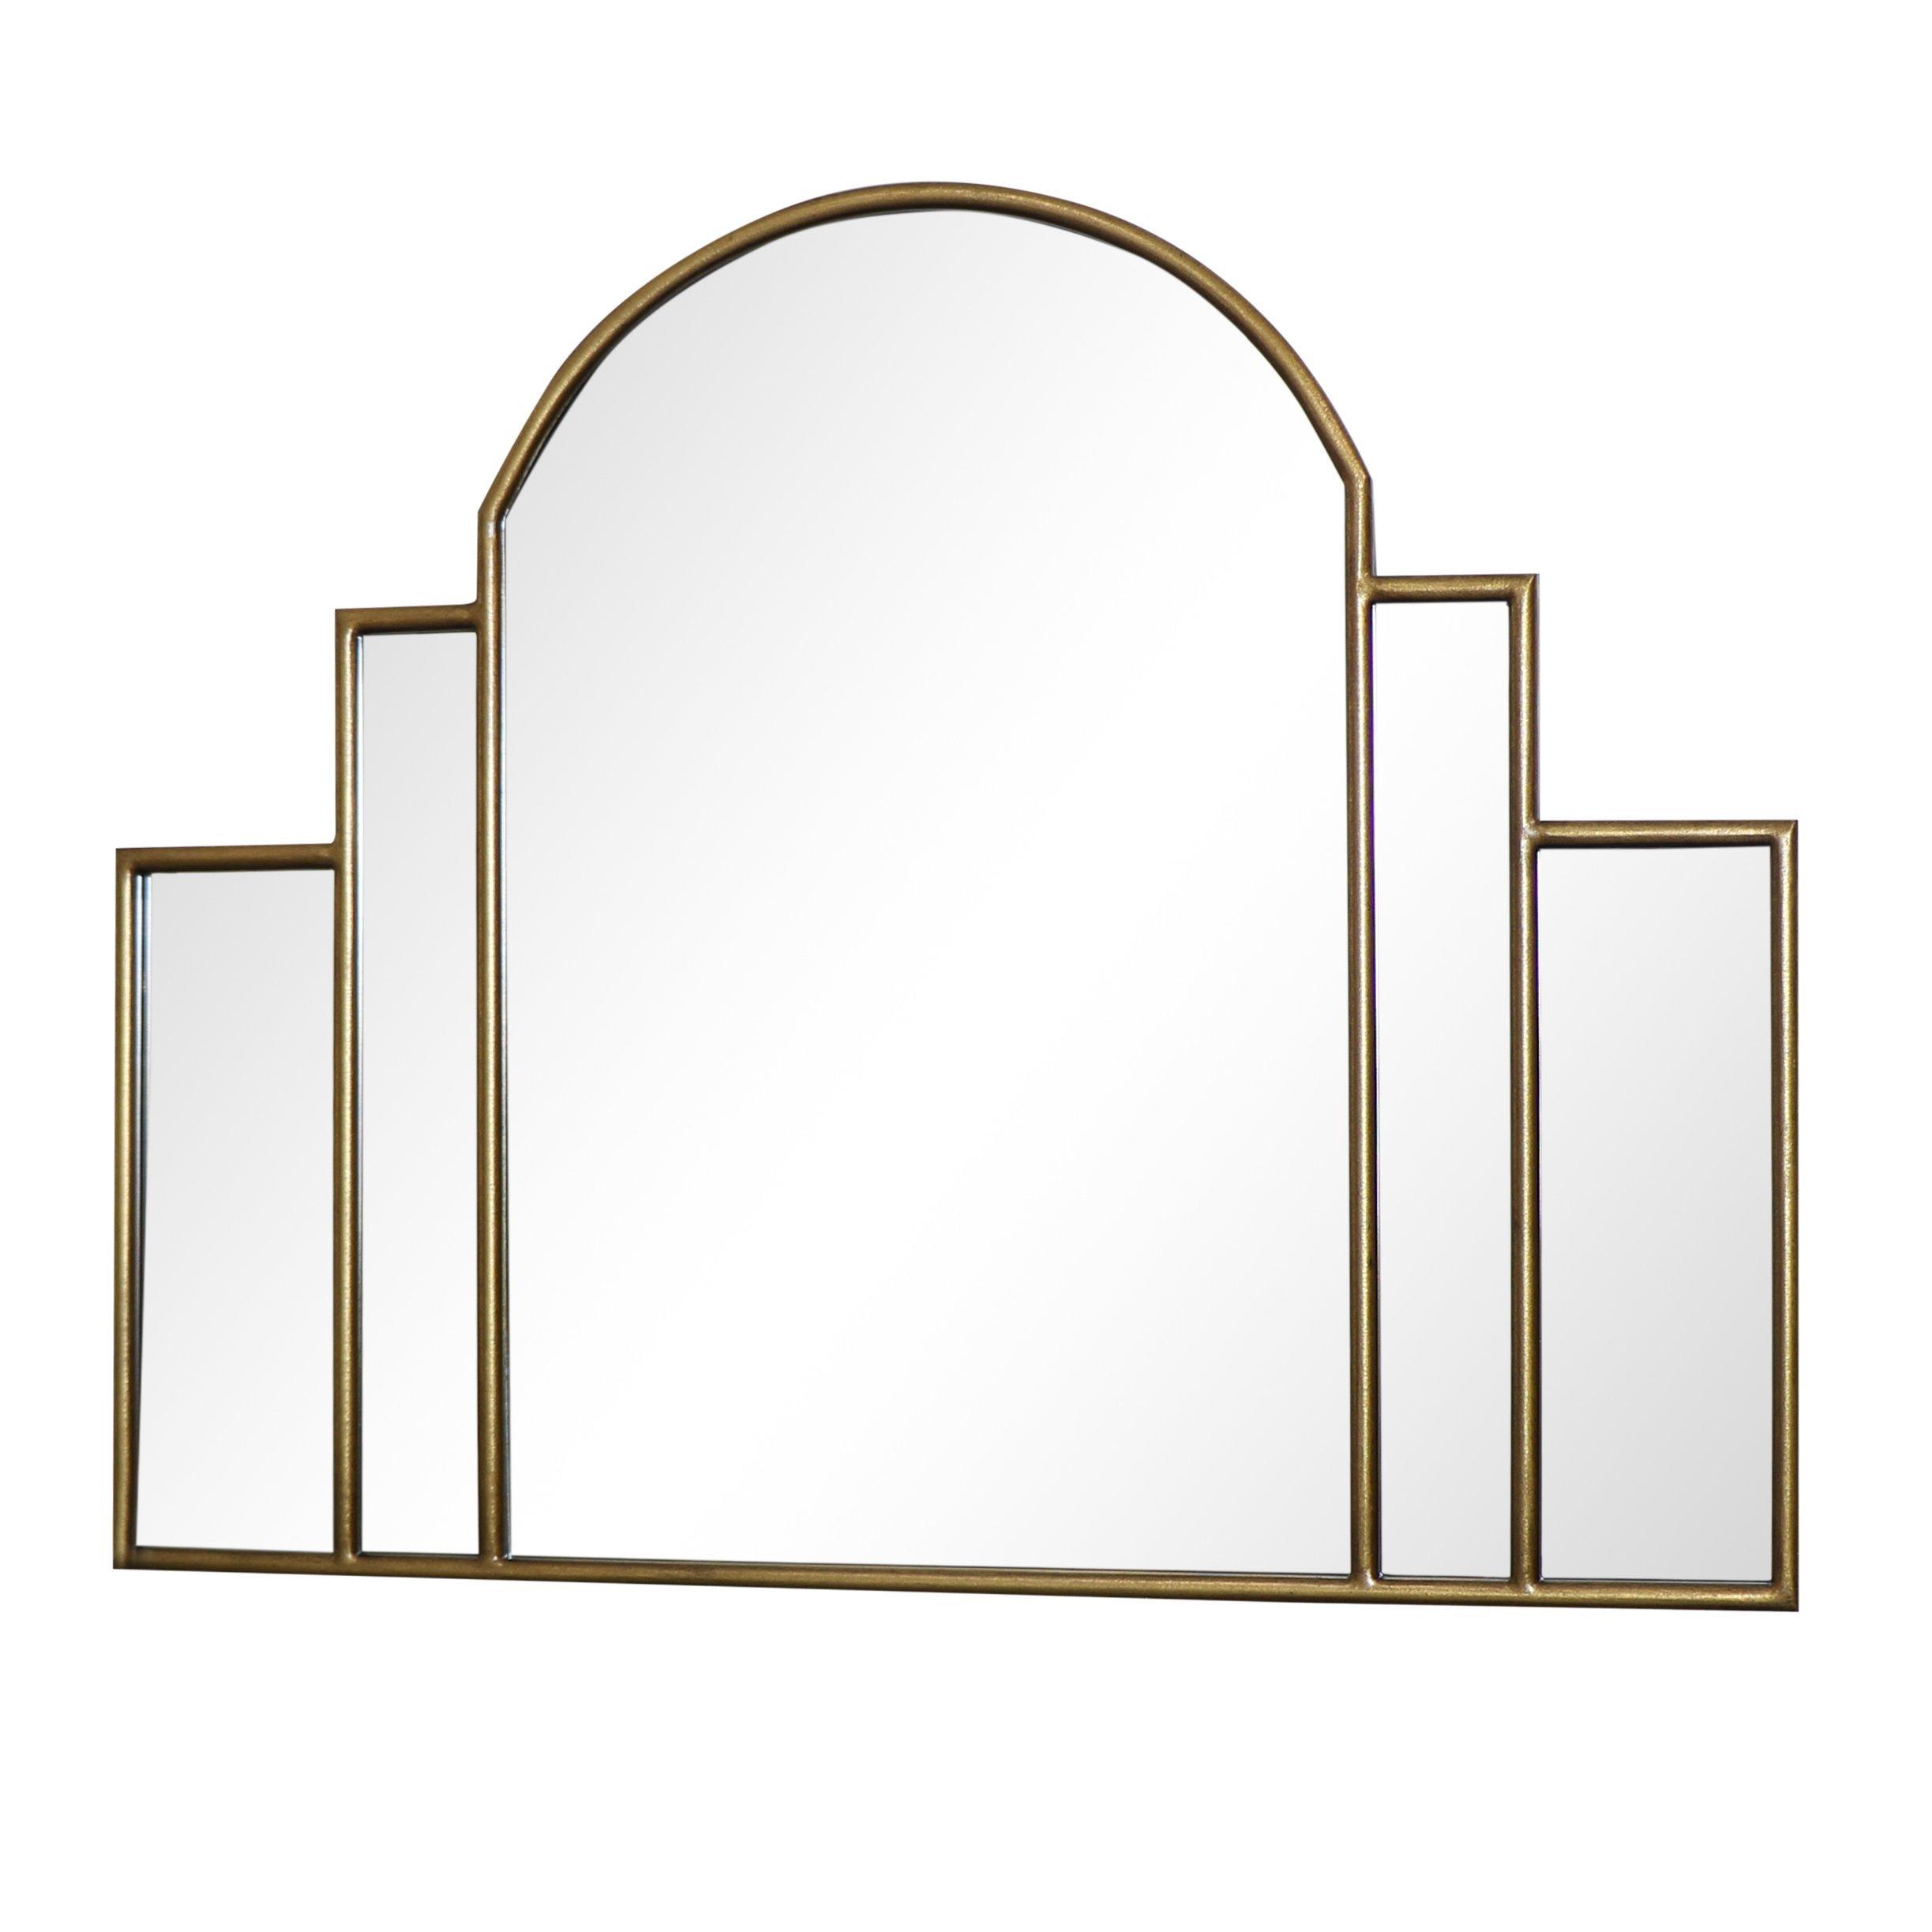 Large Gold Art Deco Arch Fan Mirror 80cm X 65cm